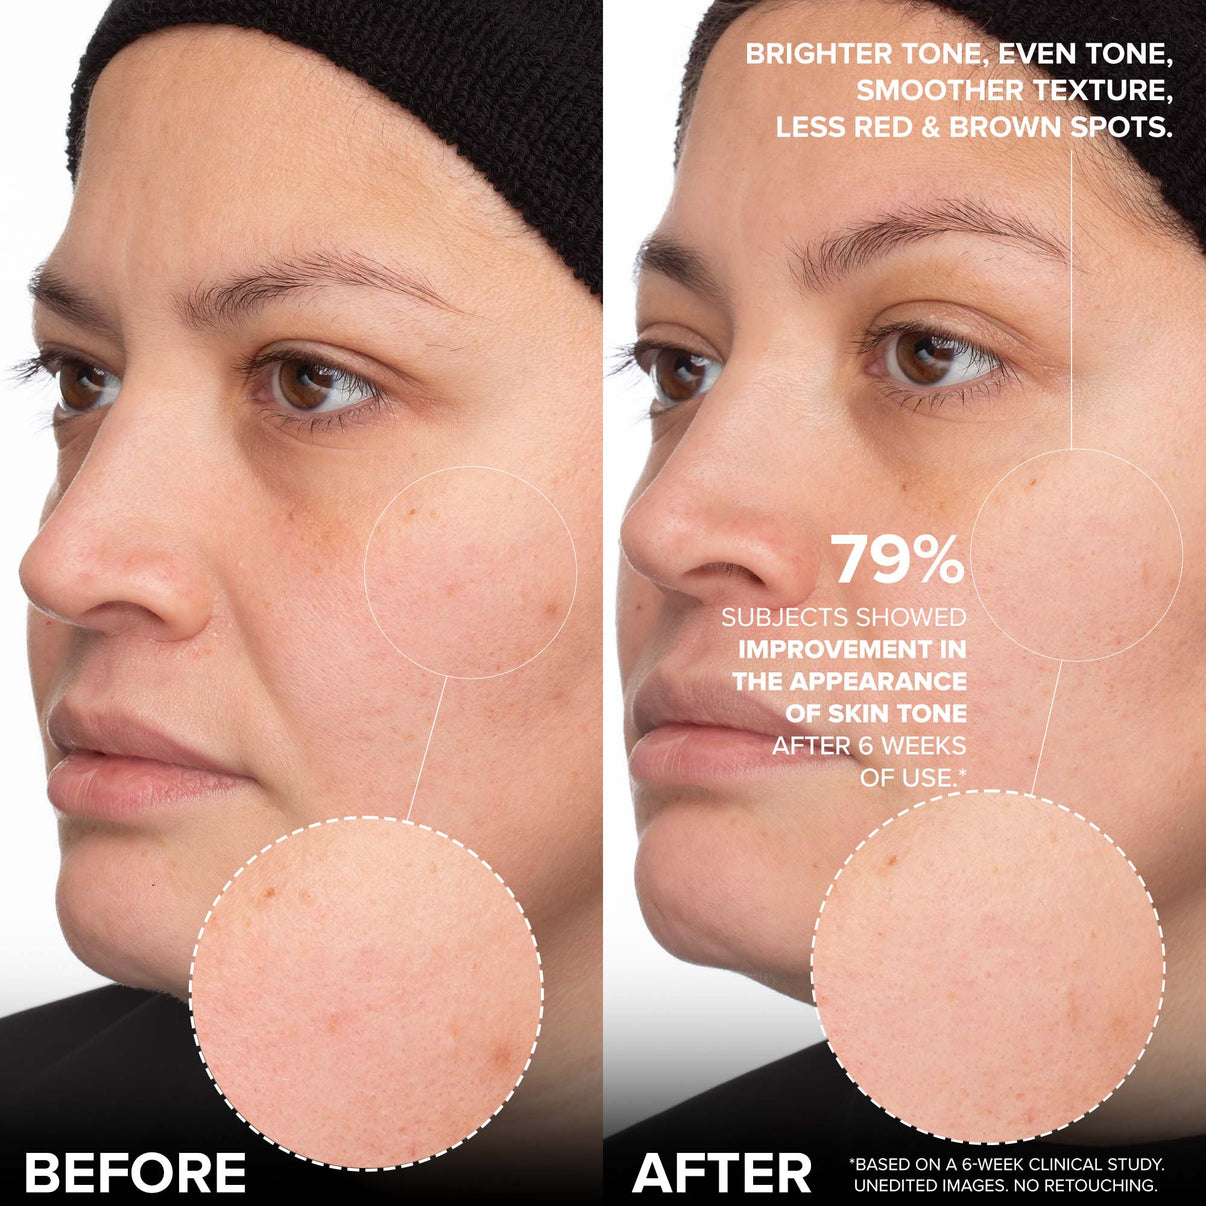 被験者の79%は、6週間の使用後に肌の色合いの改善が見られました。